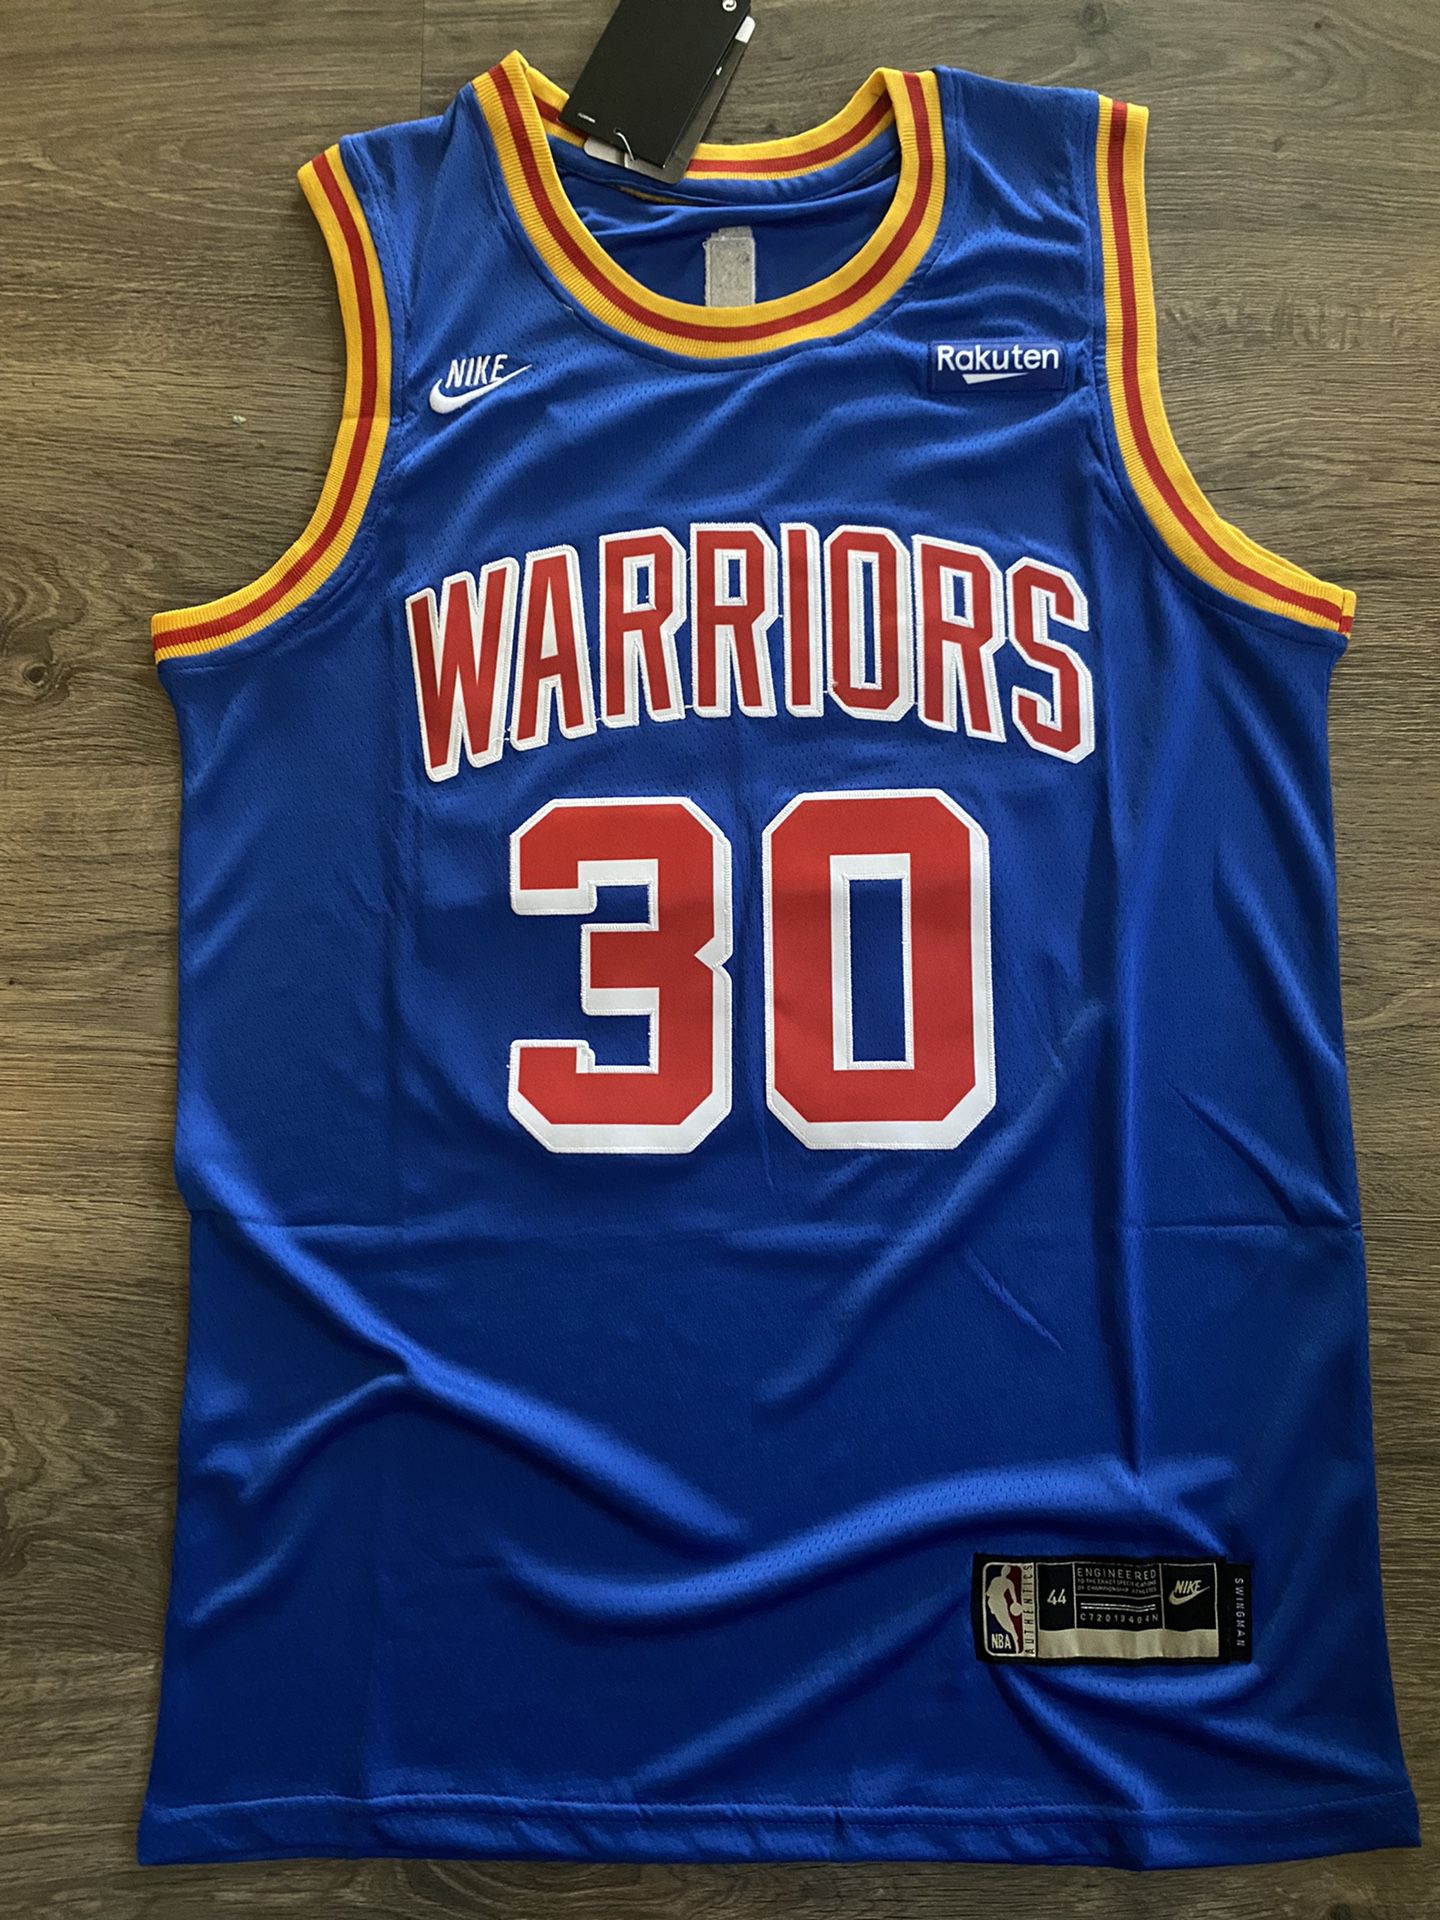 warriors origins jersey for sale